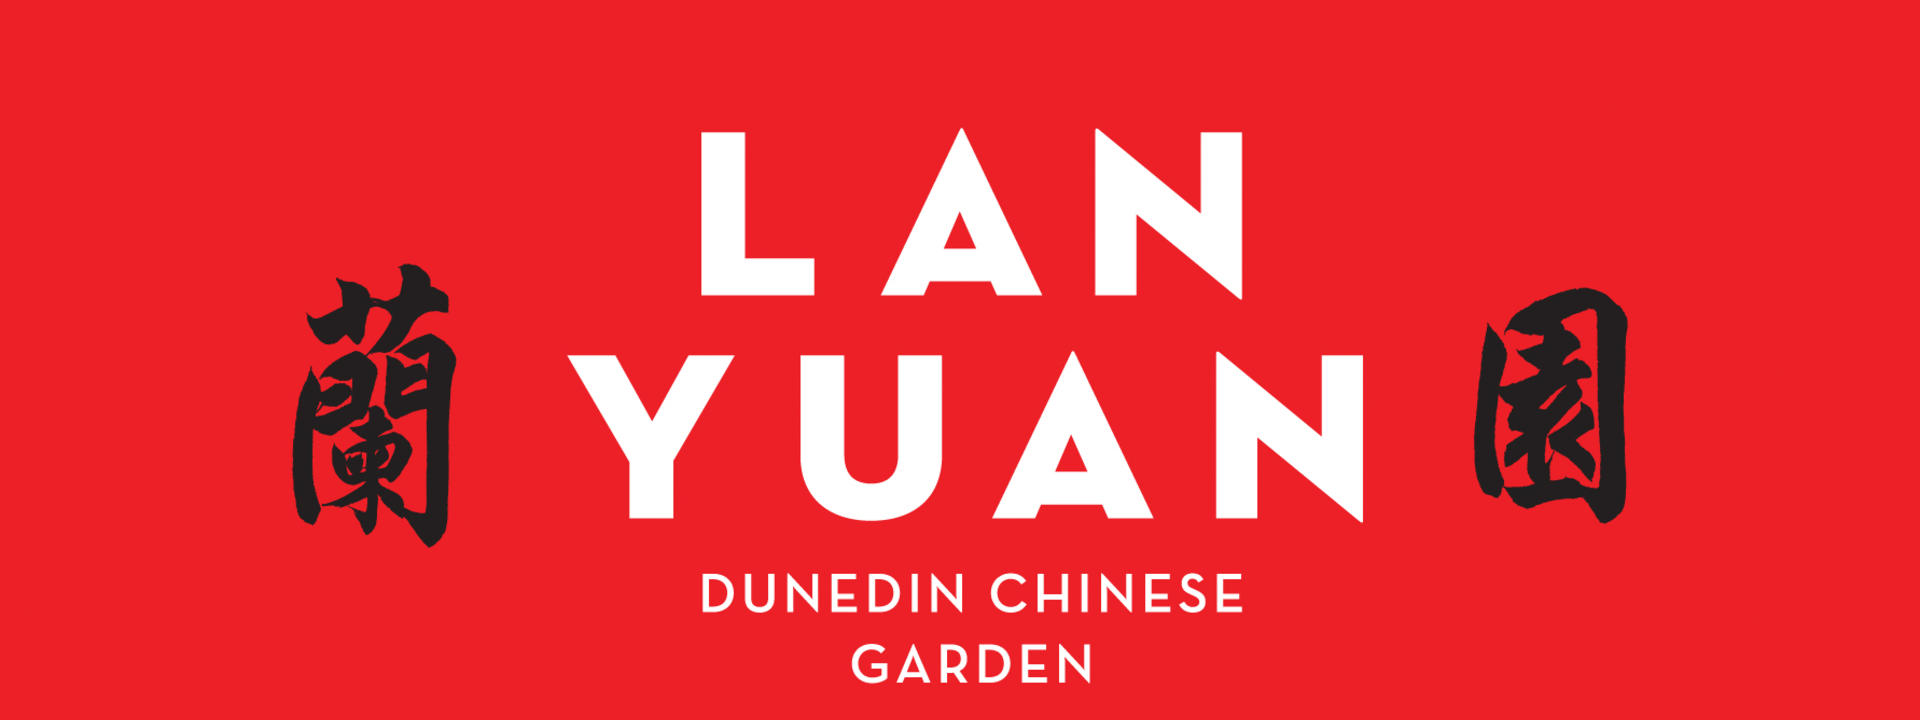 lan-yuan-dunedin-chinese-garden-logos-singles-red-cmyk.jpg